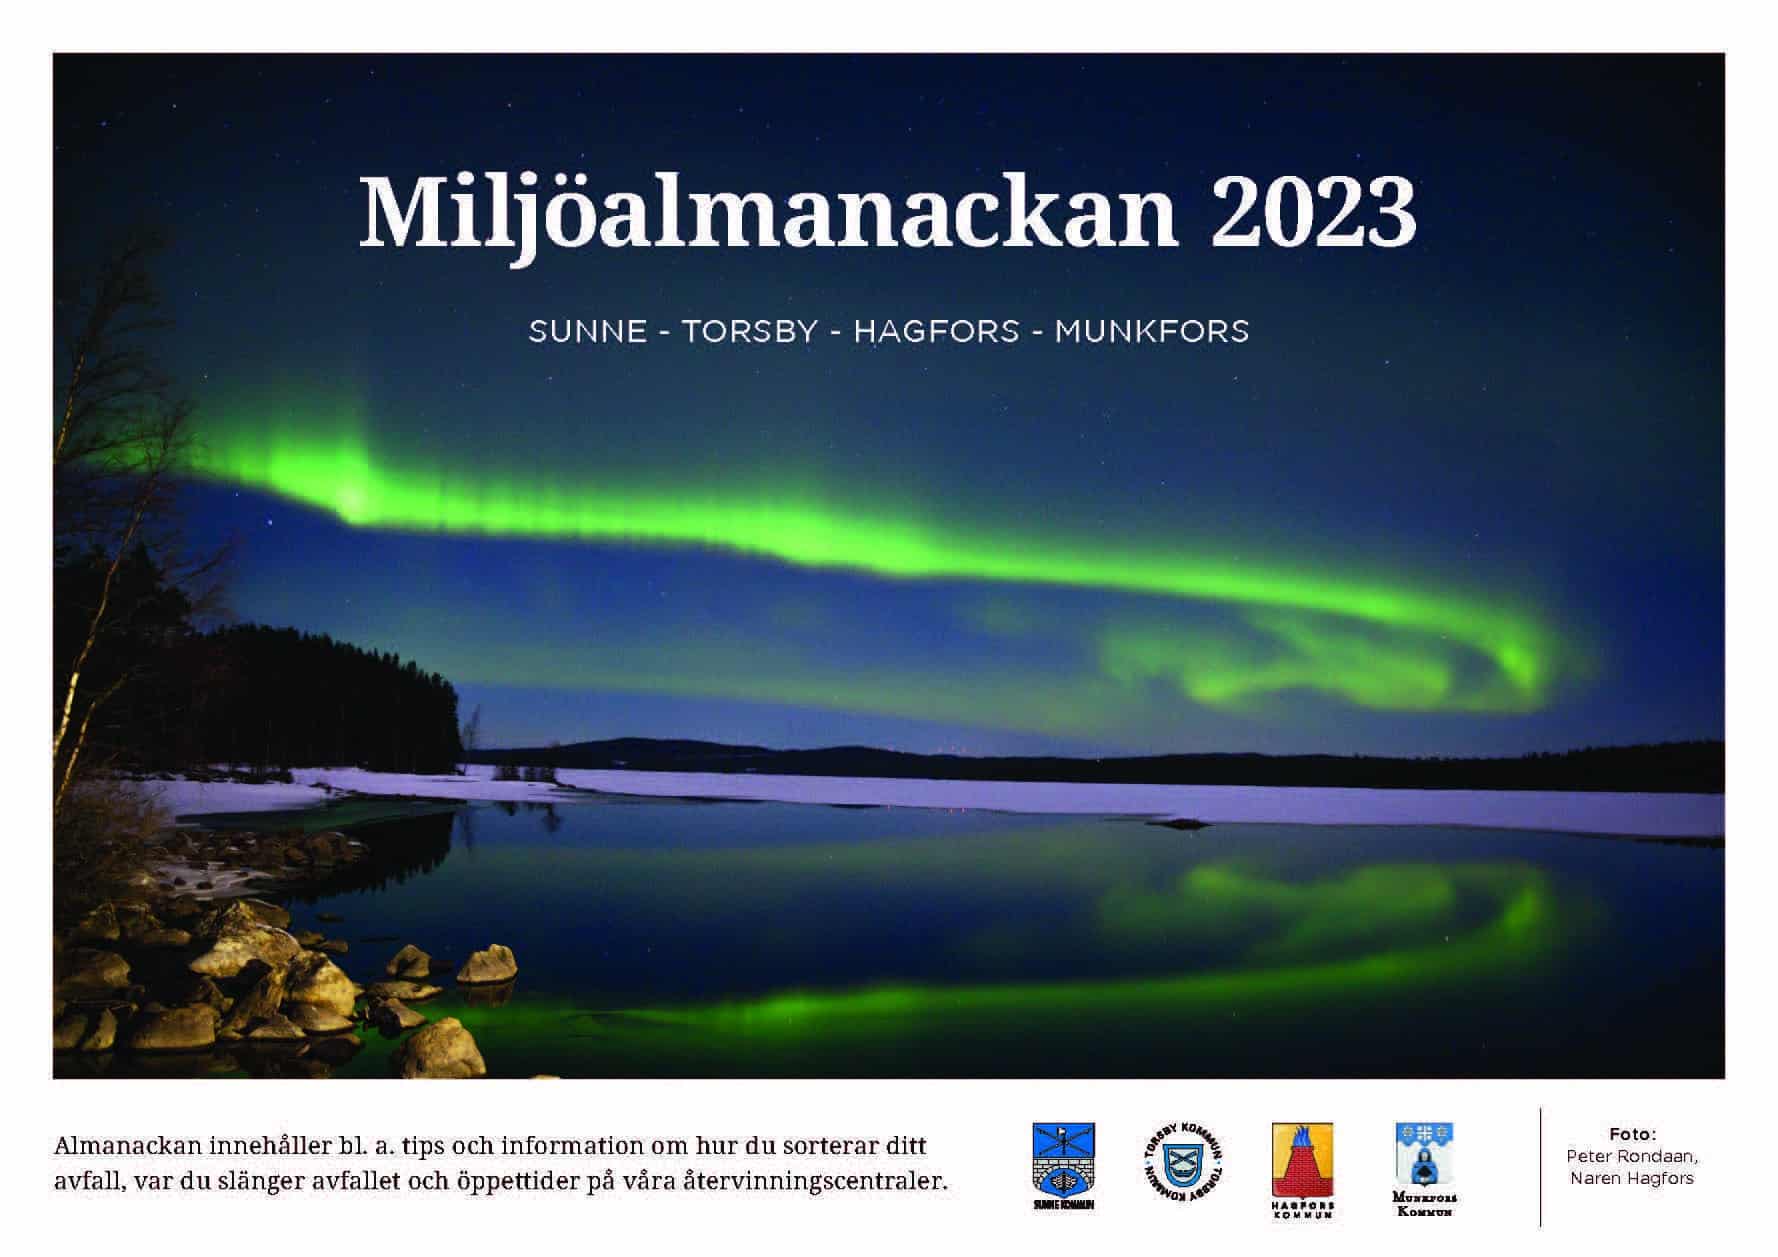 Framsidan av Miljöalmanackan 2023 är en bild på norrsken över en sjö.